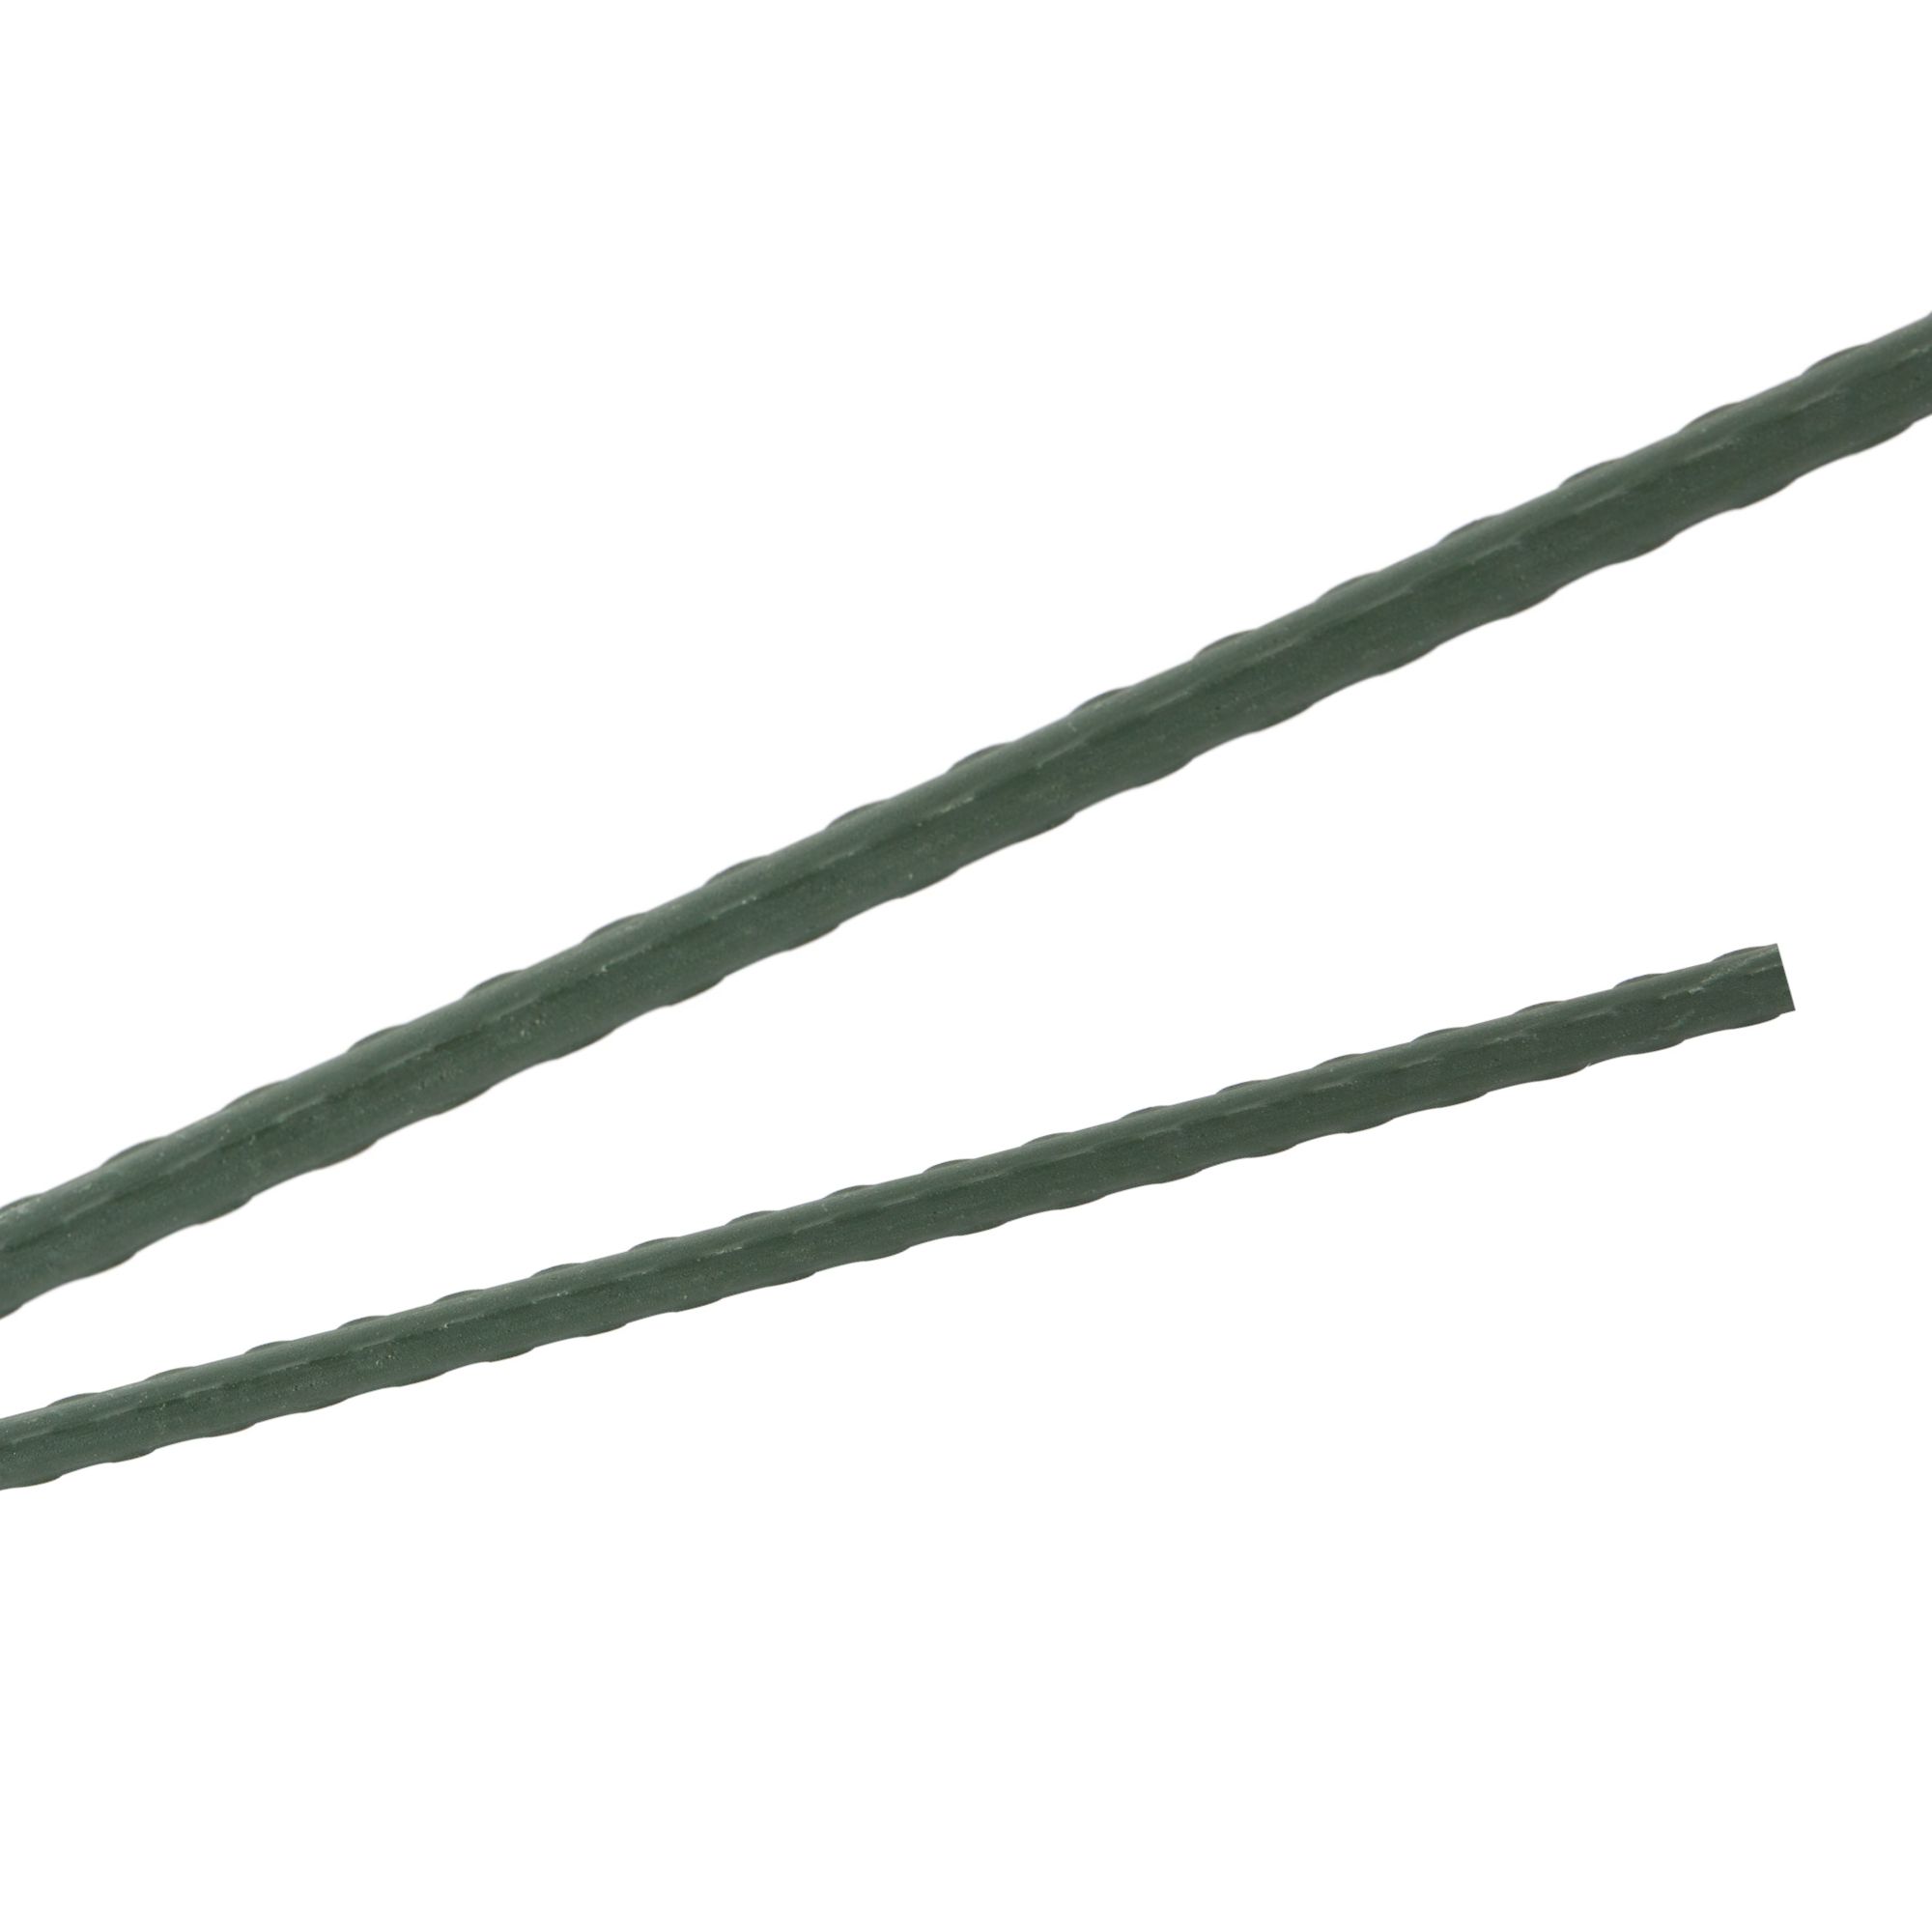 Tyč podpěrná, 8mm, 60cm, kov+PVC, zelená 0.055000 Kg GIGA Sklad20 211778 301